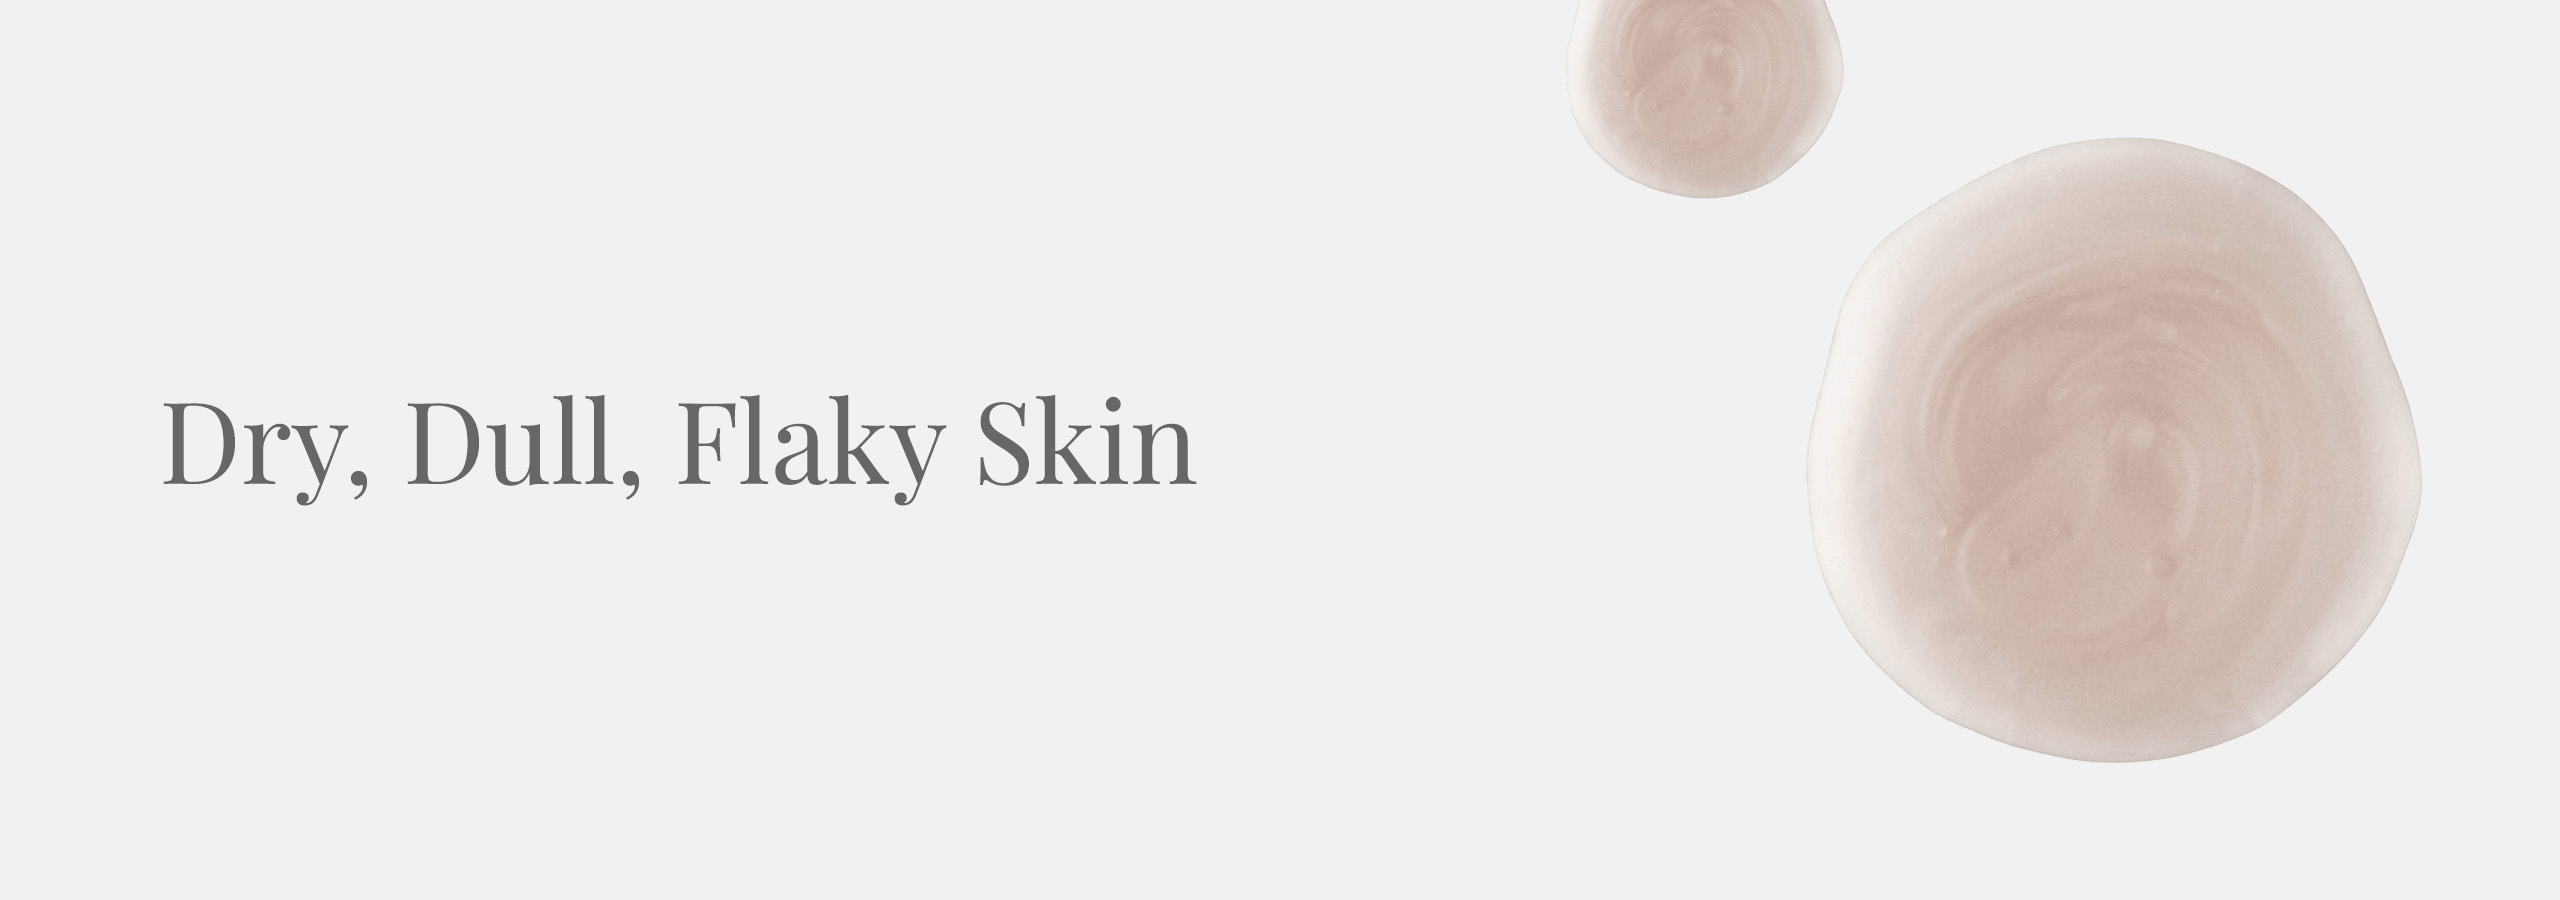 Dry Dull Flaky Skin Desktop 2